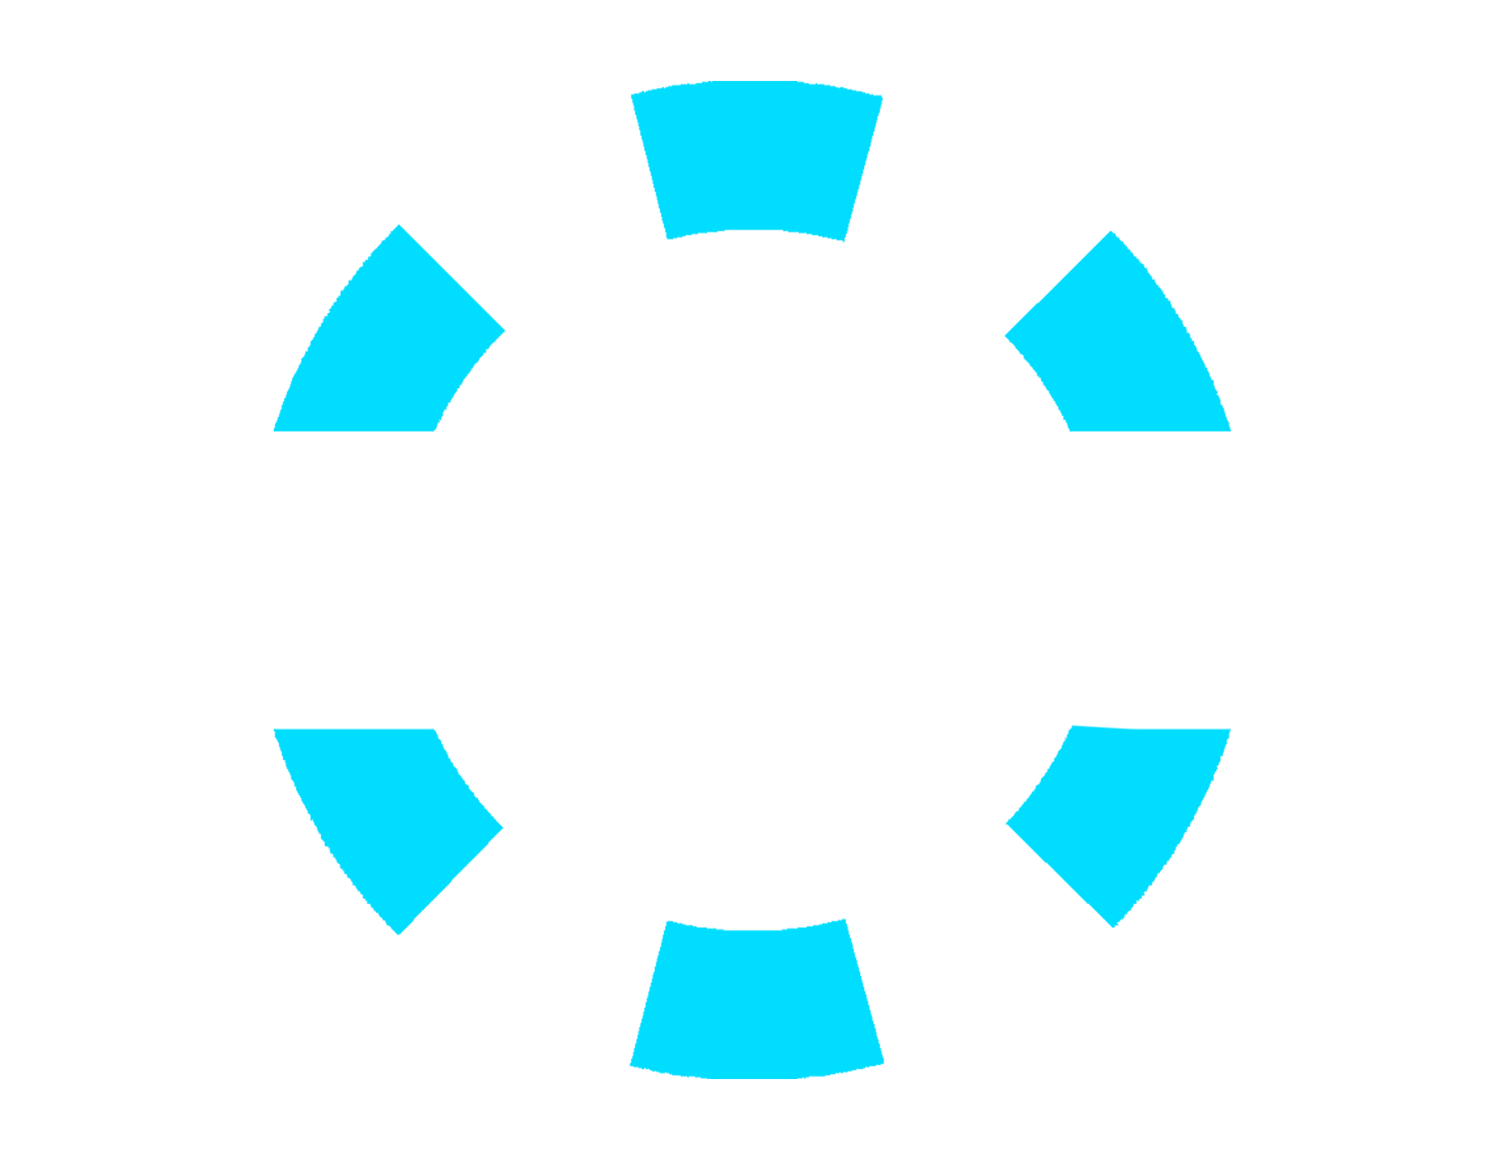 $CINO Token